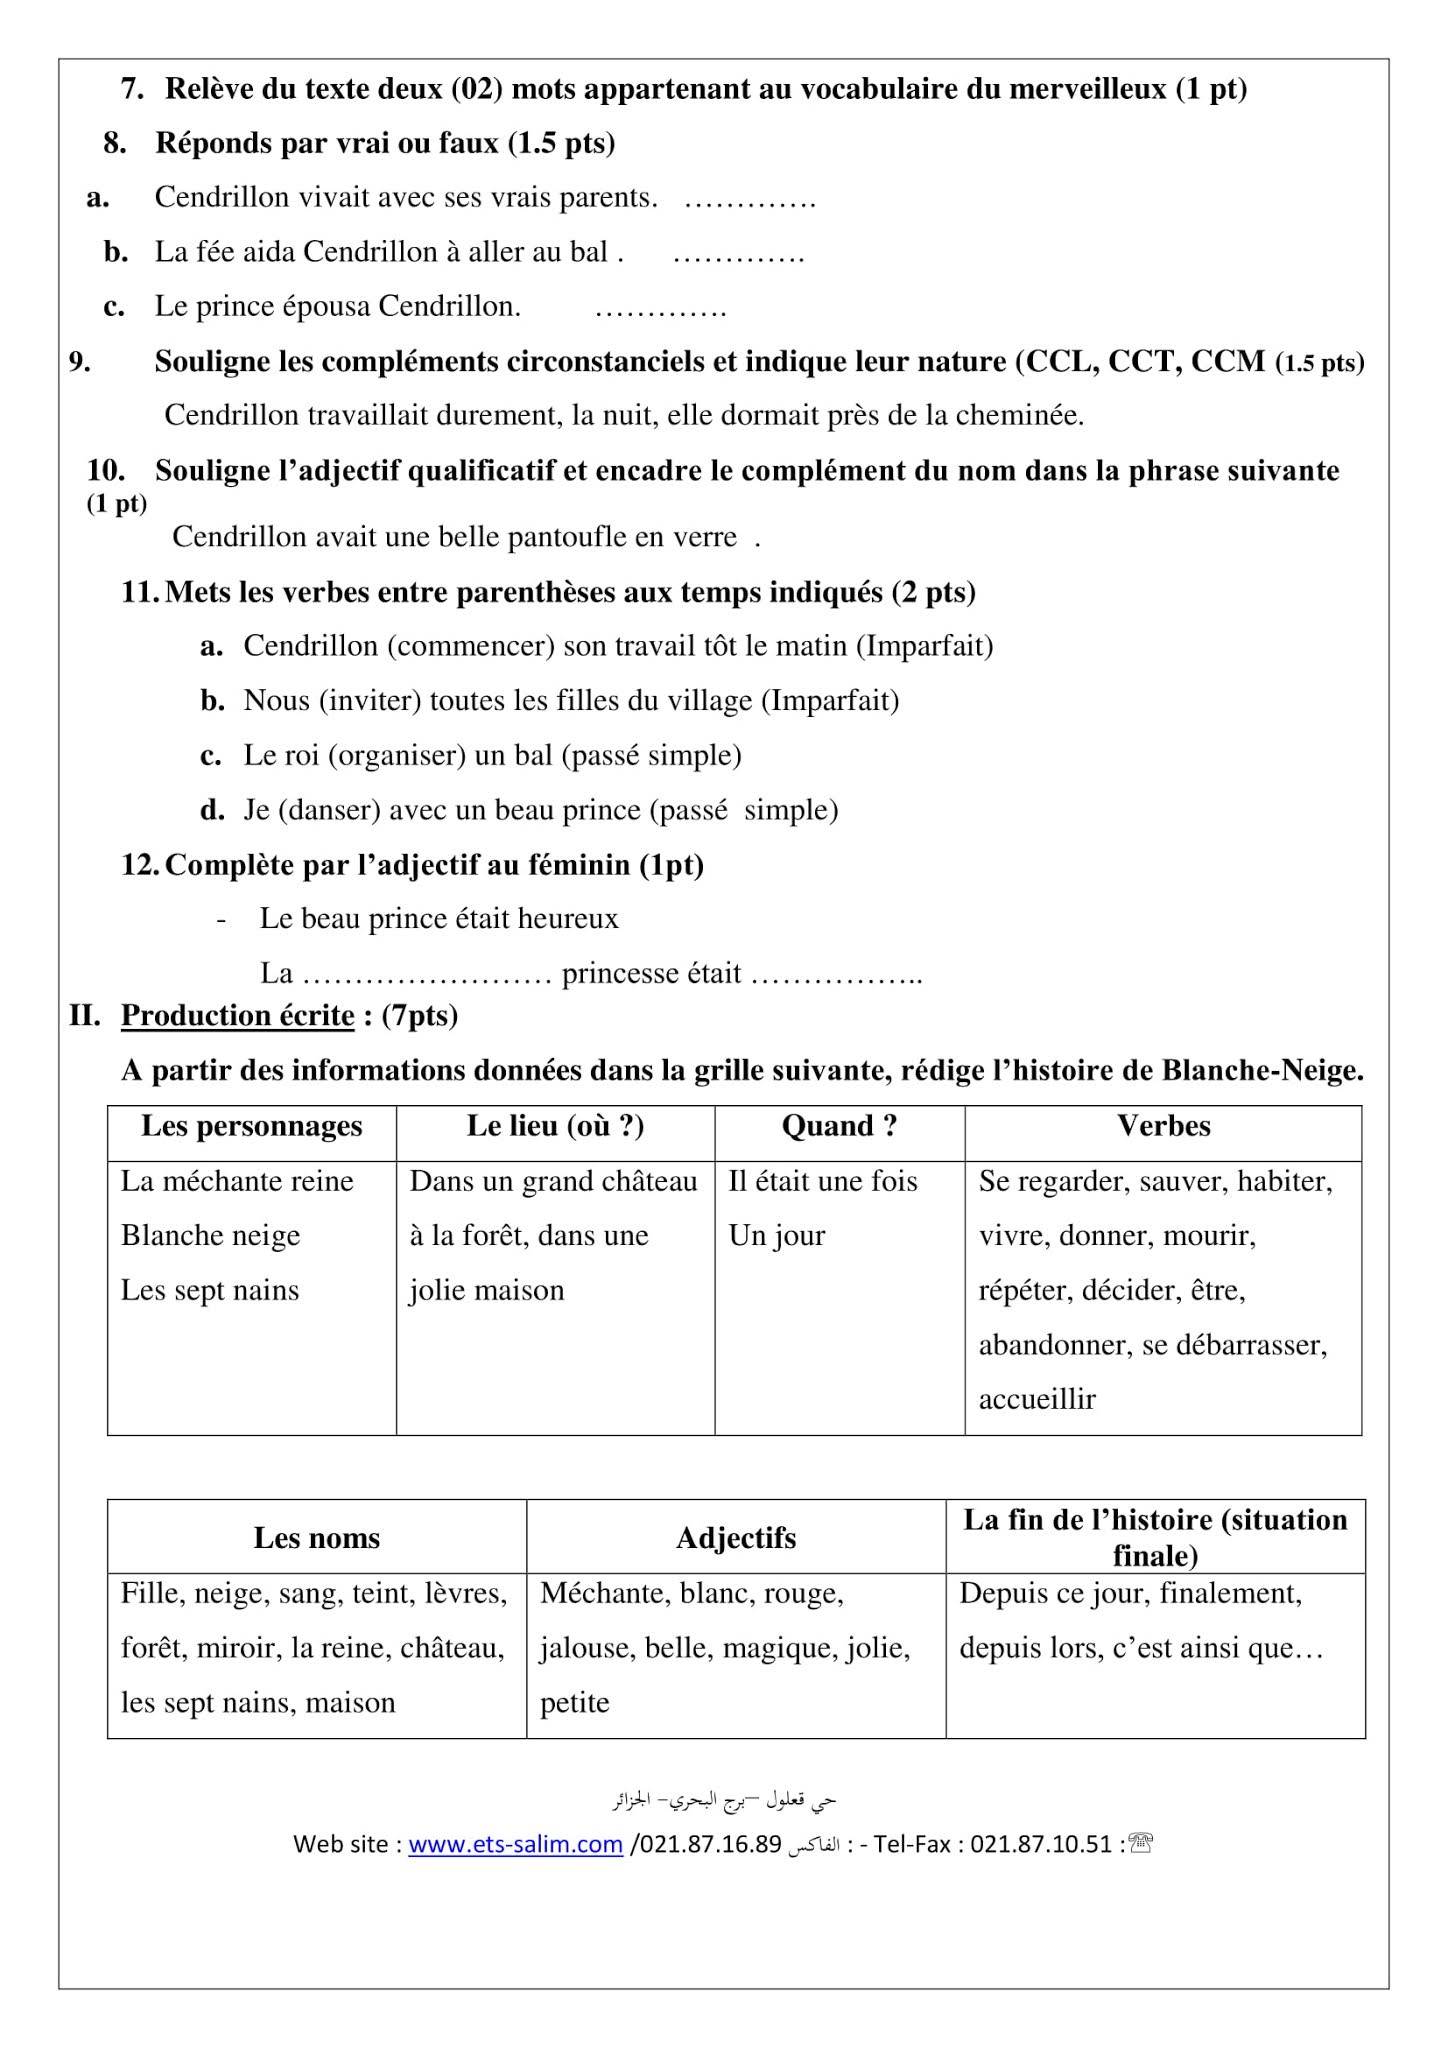 إختبار اللغة الفرنسية الفصل الأول للسنة الثانية متوسط - الجيل الثاني نموذج 8